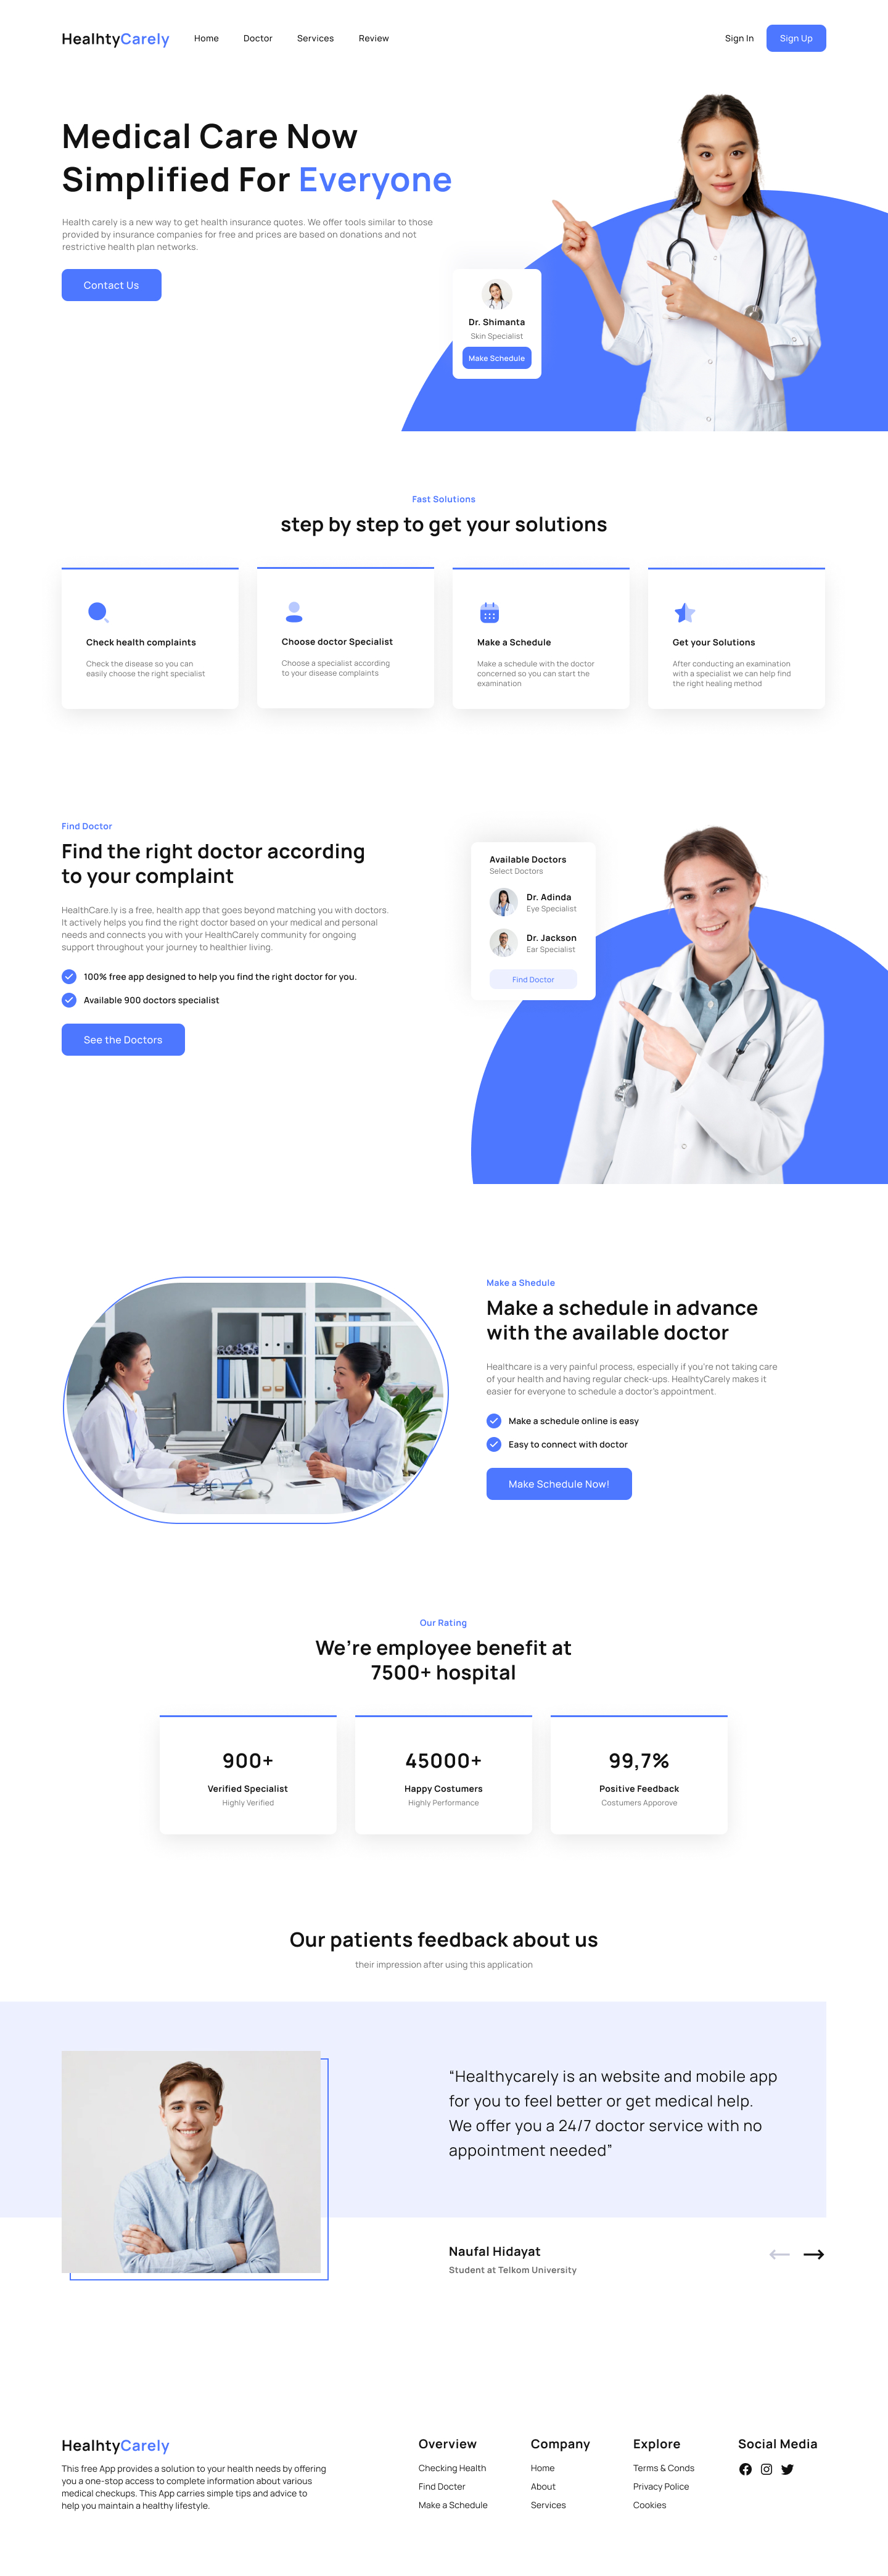 蓝色系医疗健康网站落地页Landing Page WEB UI界面设计 .fig素材